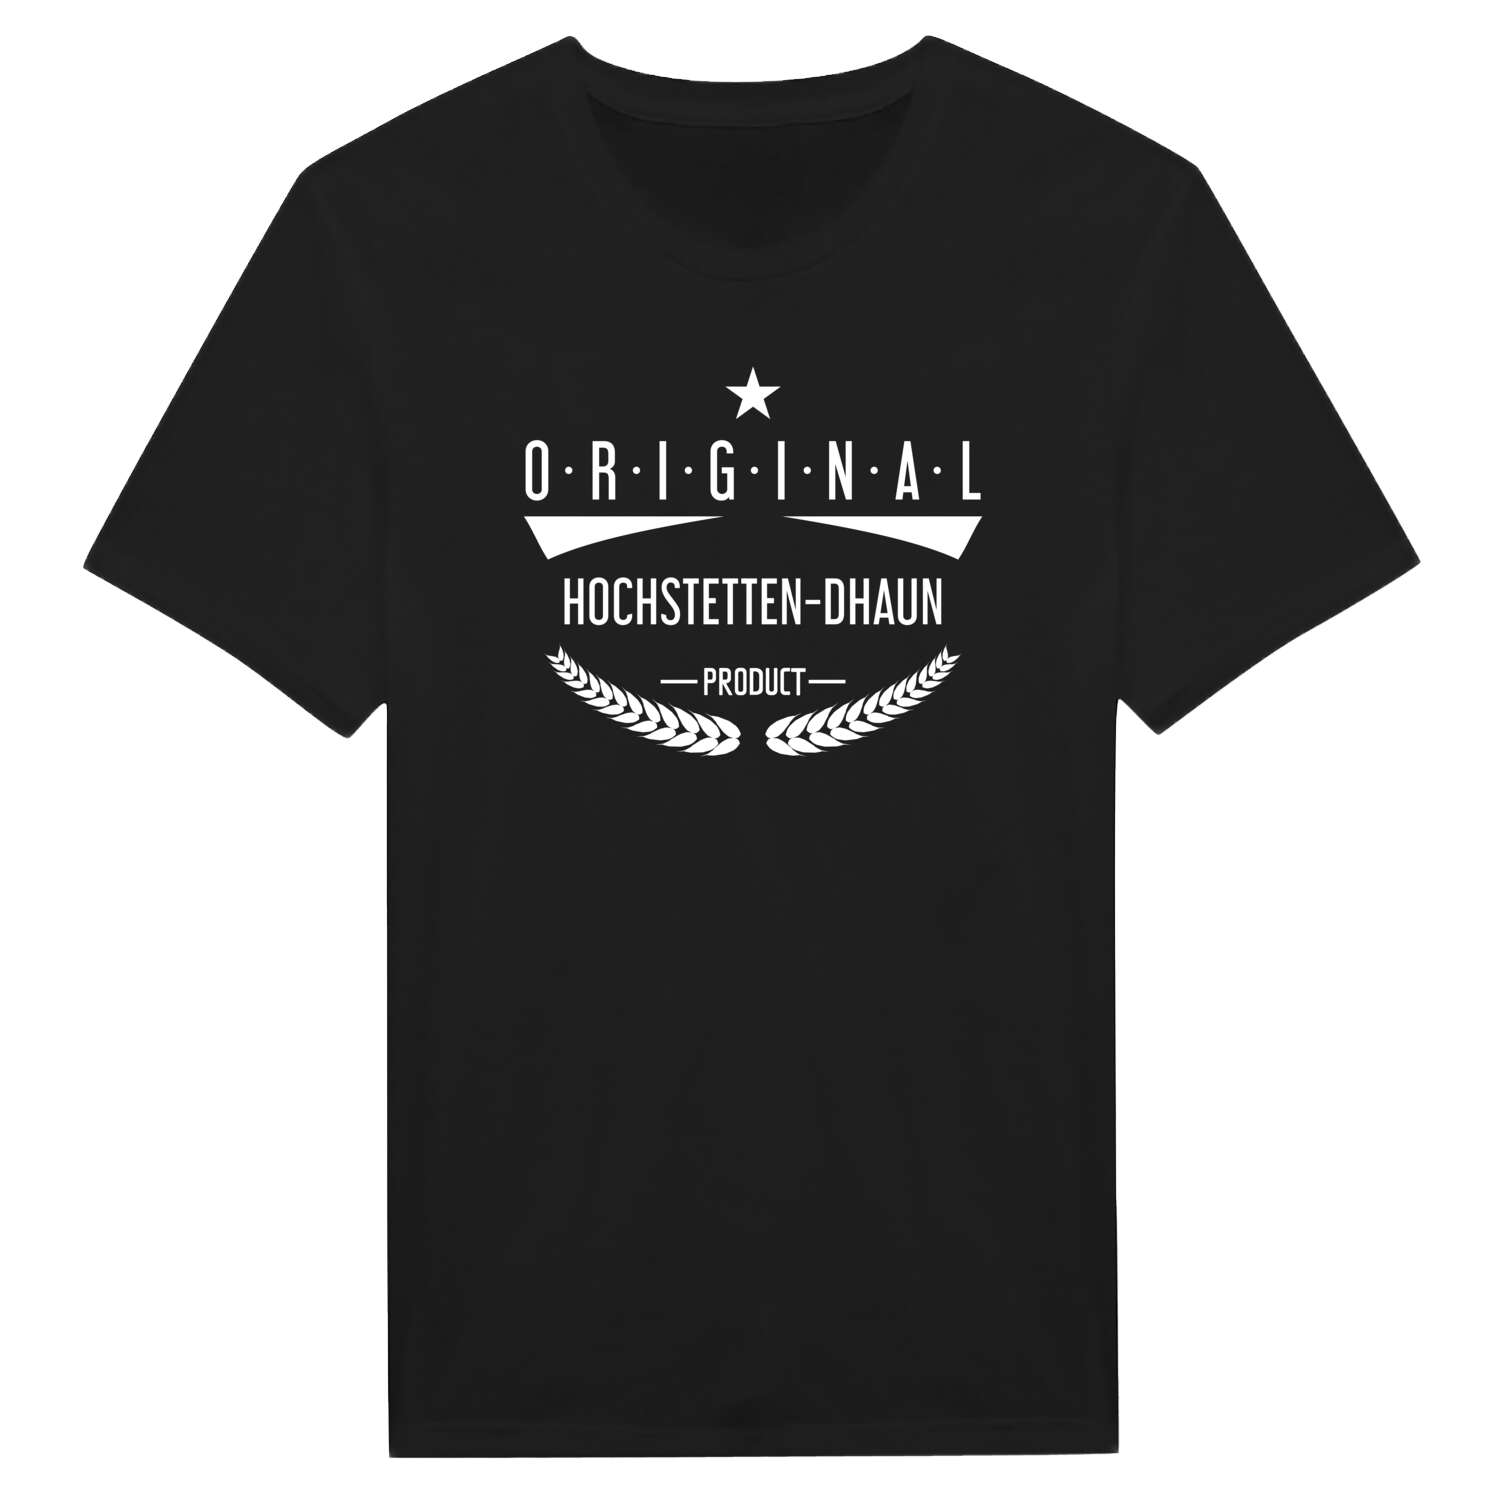 Hochstetten-Dhaun T-Shirt »Original Product«